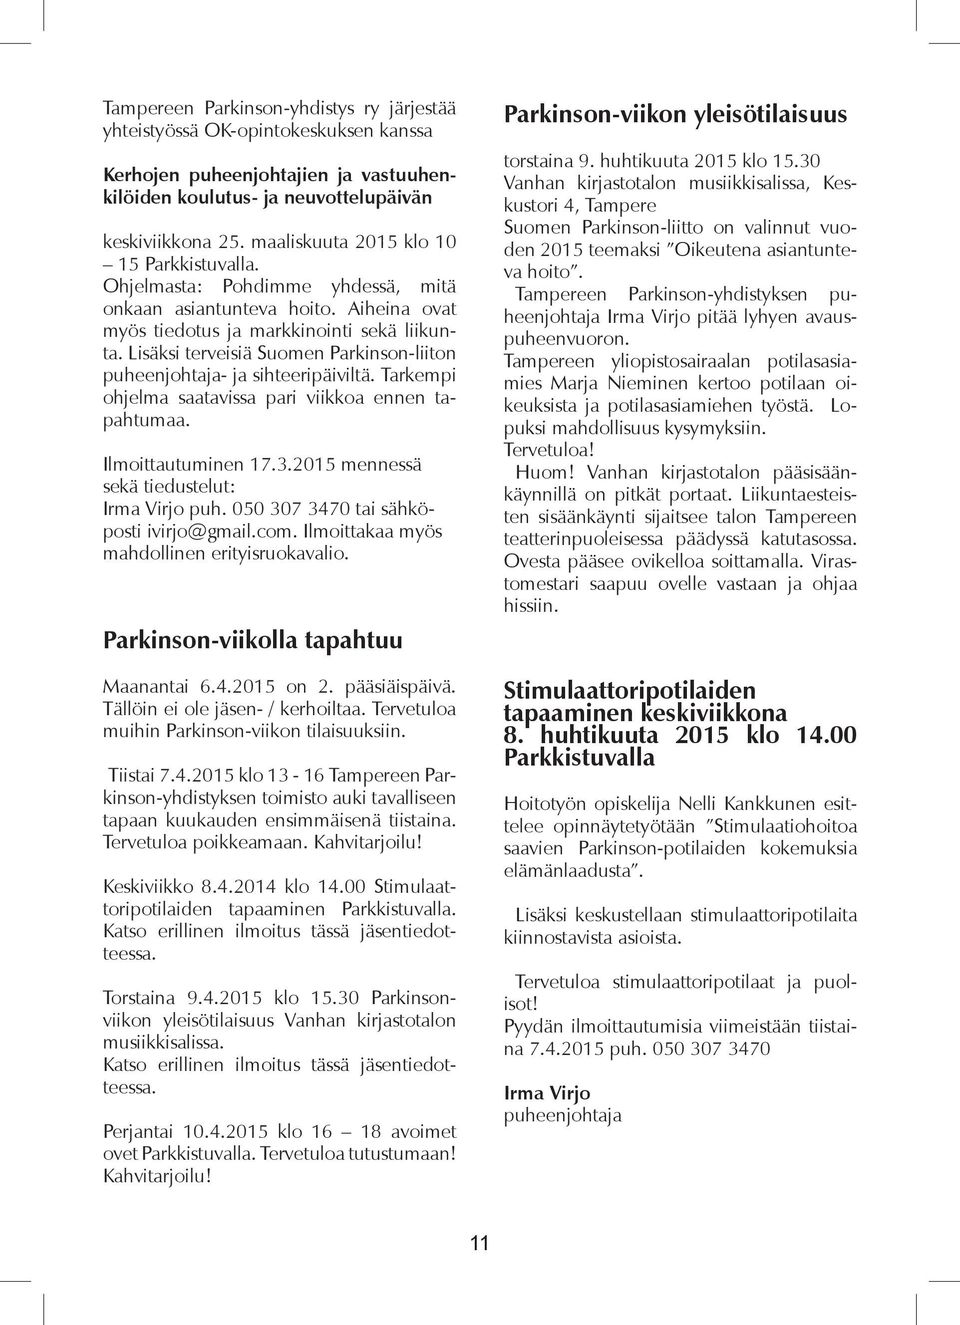 Lisäksi terveisiä Suomen Parkinson-liiton puheenjohtaja- ja sihteeripäiviltä. Tarkempi ohjelma saatavissa pari viikkoa ennen tapahtumaa. Ilmoittautuminen 17.3.